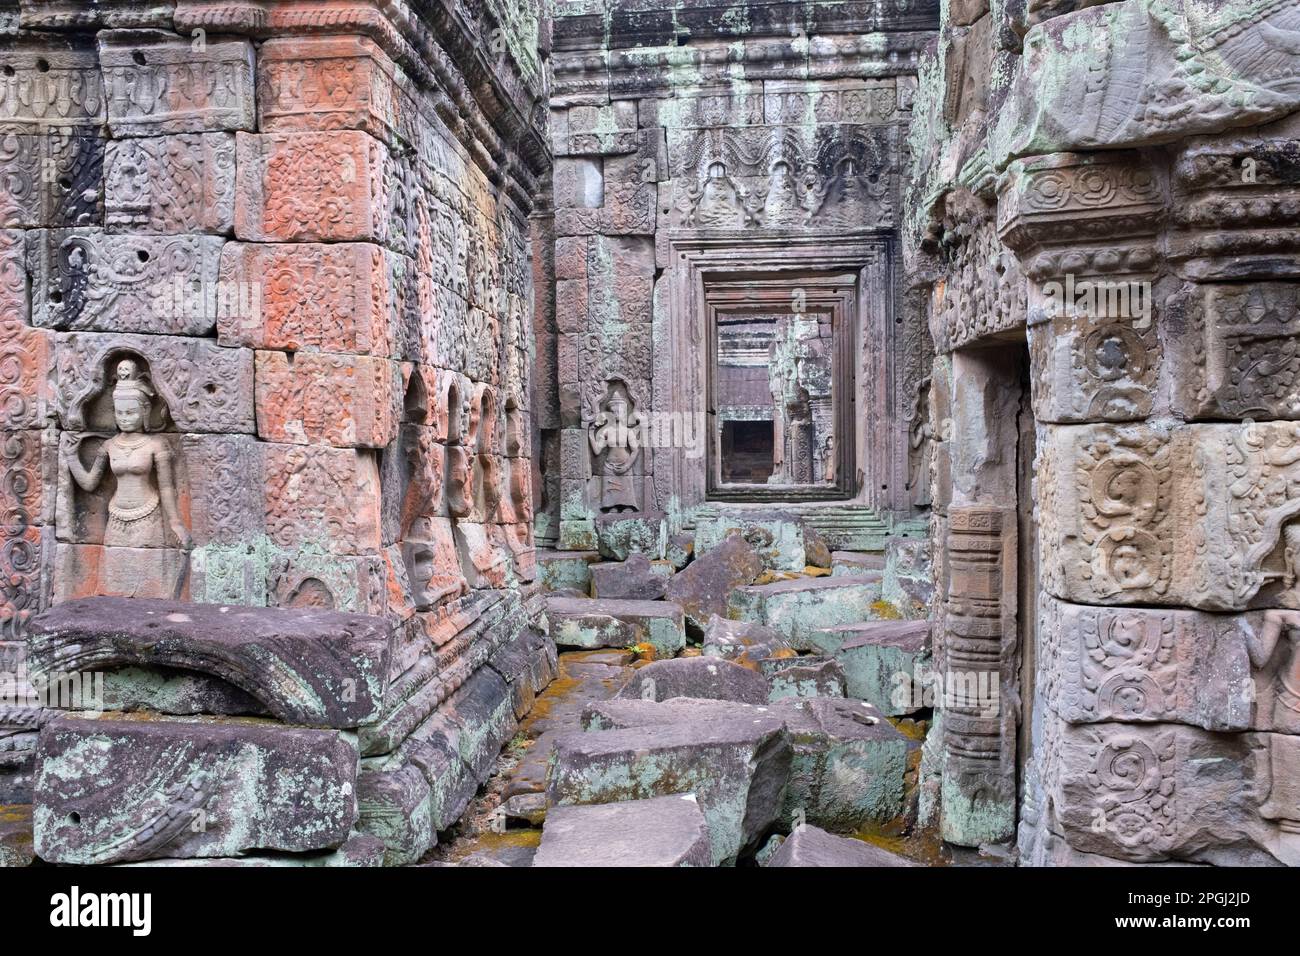 Cambogia: Devata (divinità femminile) adornano le mura di Preah Khan (Tempio della Sacra spada). Preah Khan è stato costruito nel tardo 12th ° secolo (1191) da Jayavarman VII e si trova appena a nord di Angkor Thom. Il tempio fu costruito sul luogo della vittoria di Jayavarman VII sui Chams invasori nel 1191. Era il centro di una grande organizzazione, con quasi 100.000 funzionari e funzionari. In un tempo era un'università buddista. La divinità primaria del tempio è la boddhisatva Avalokiteshvara, nella forma del padre di Jayavarman. Foto Stock